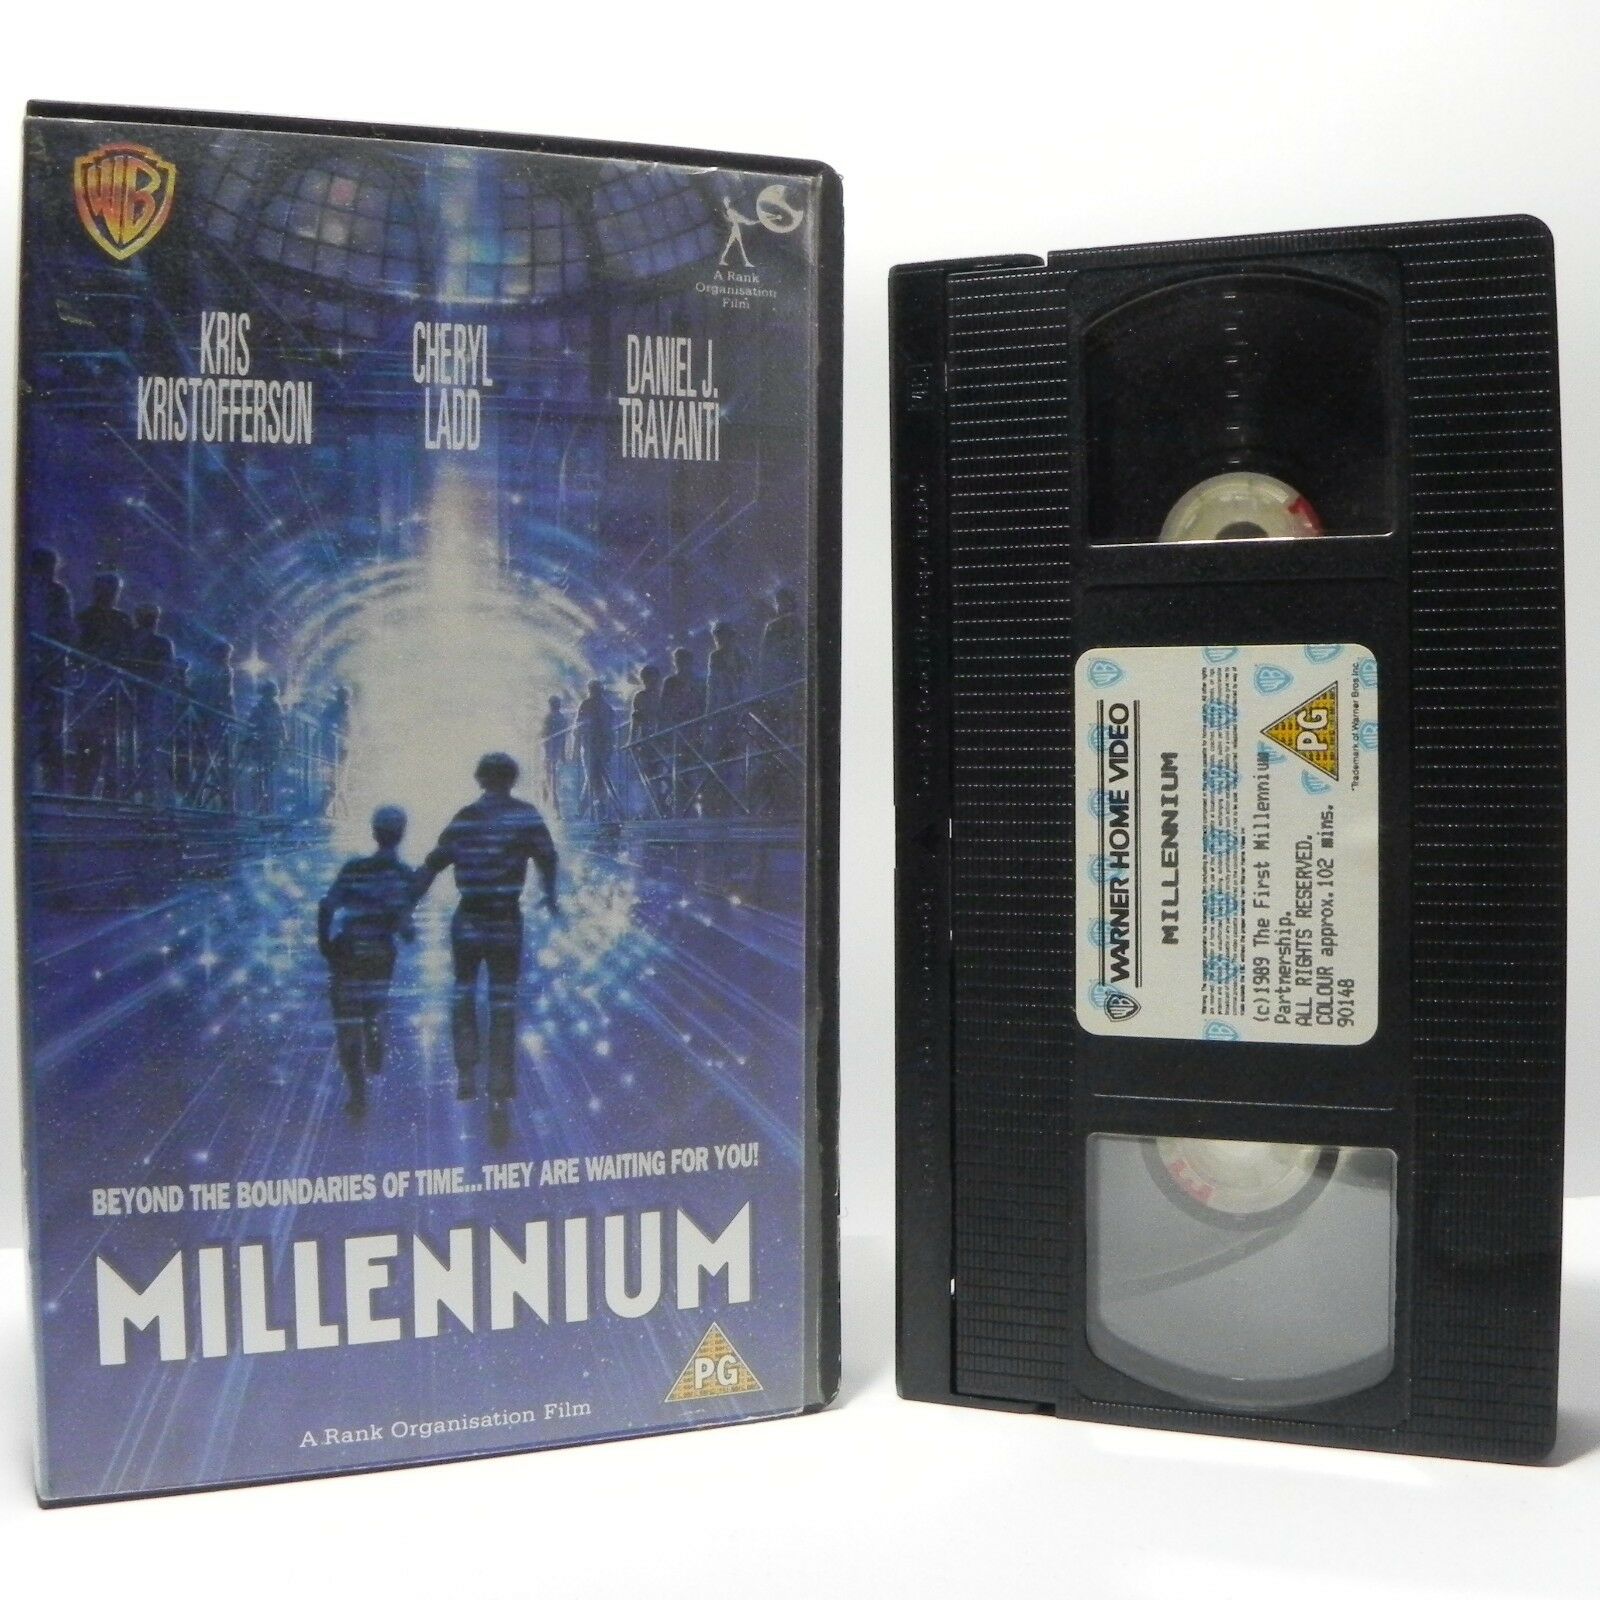 Millenium: (1989) Sci-Fi - Fantasy - K.Kristofferson/C.Ladd/D.J.Travanti - VHS-